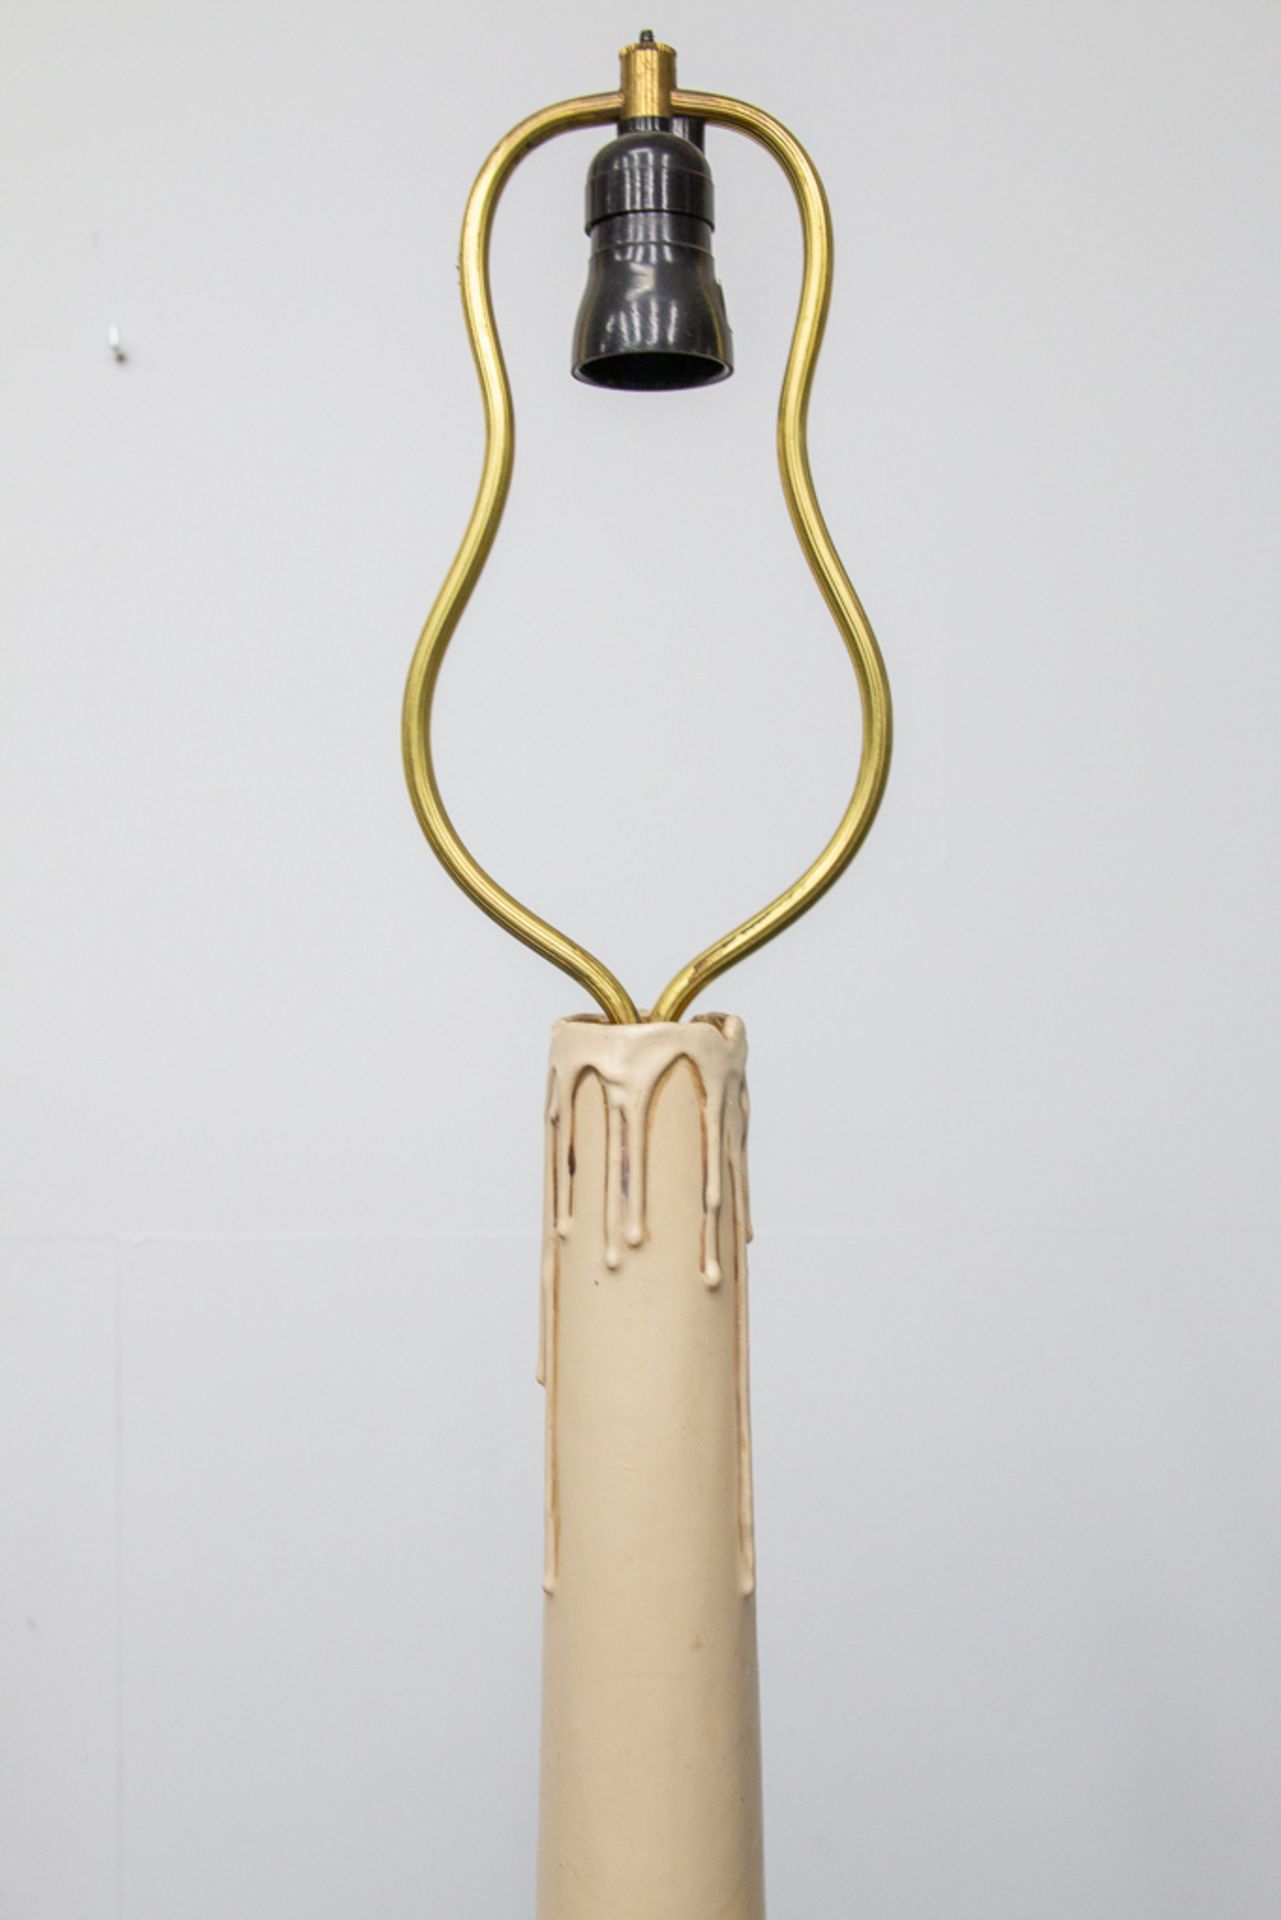 Floorlamp/Candlestickholder - Image 11 of 11